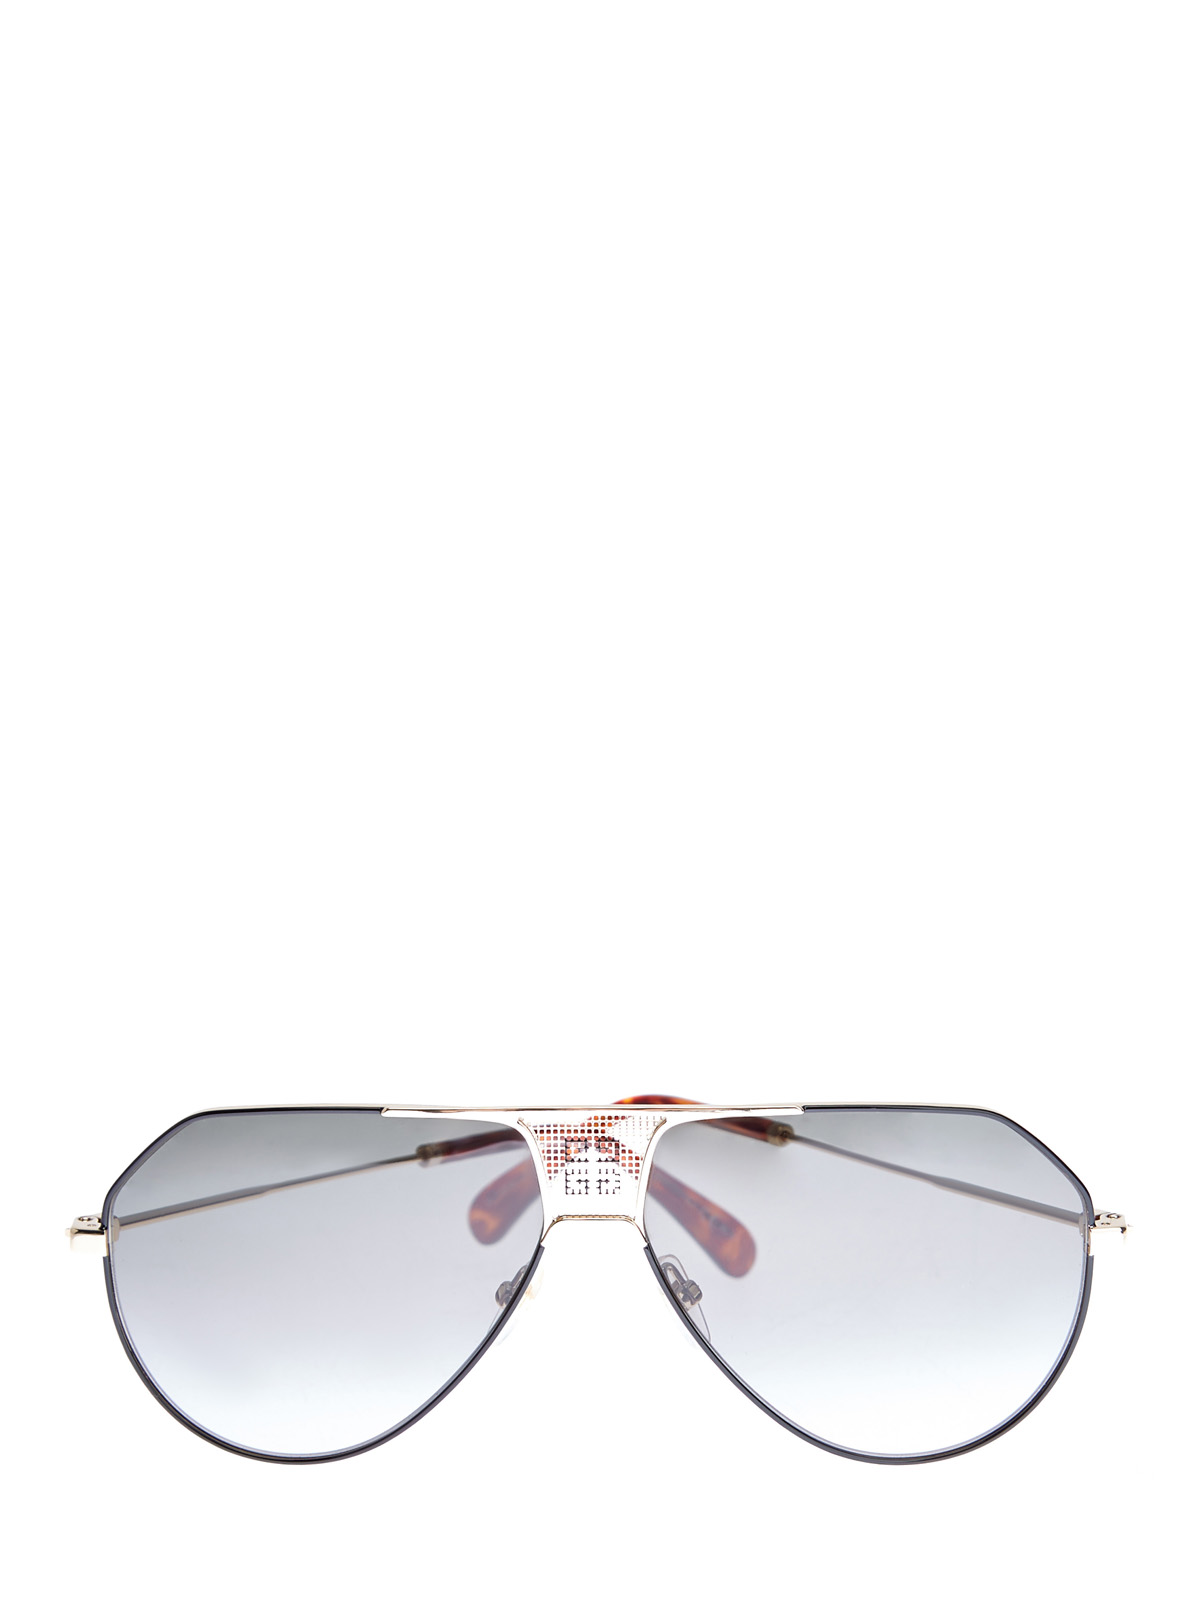 Очки-авиаторы в тонкой оправе с металлическим логотипом GIVENCHY (sunglasses), цвет черный, размер S;M;L - фото 1